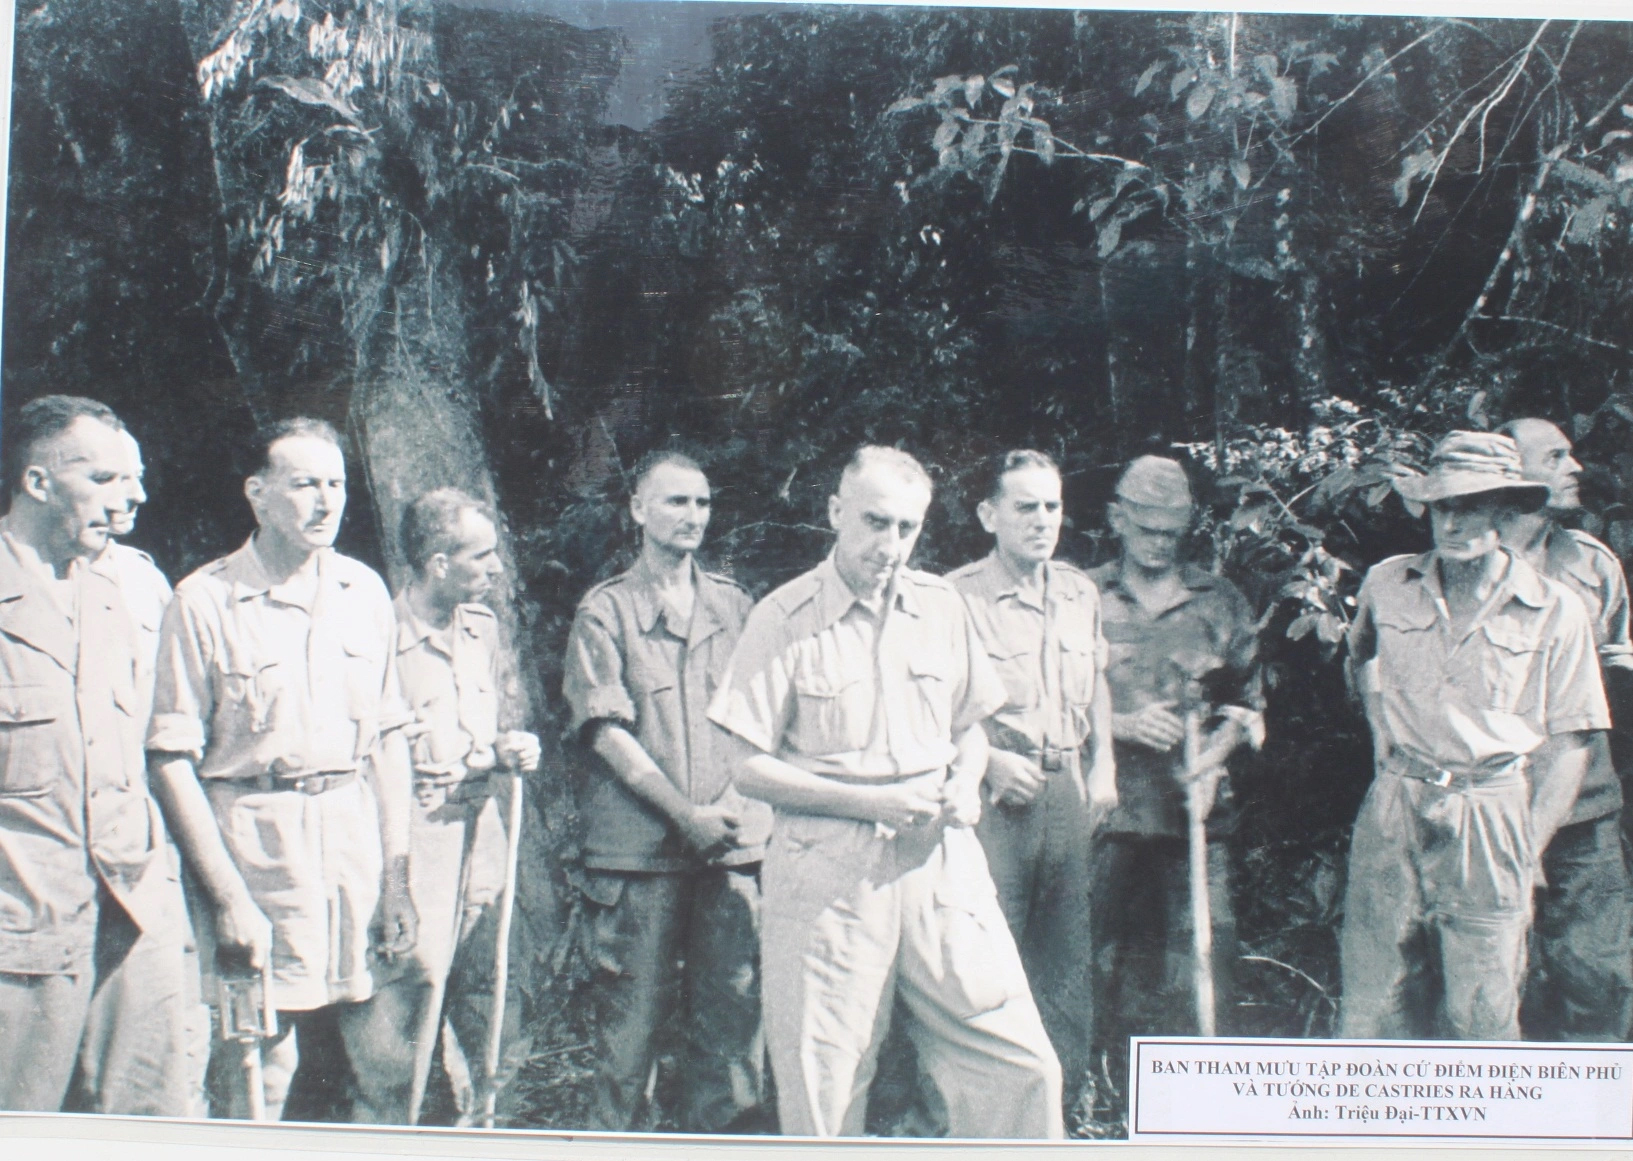 Tướng De Castries và bộ tham mưu tập đoàn cứ điểm Điện Biên Phủ ra hàng.